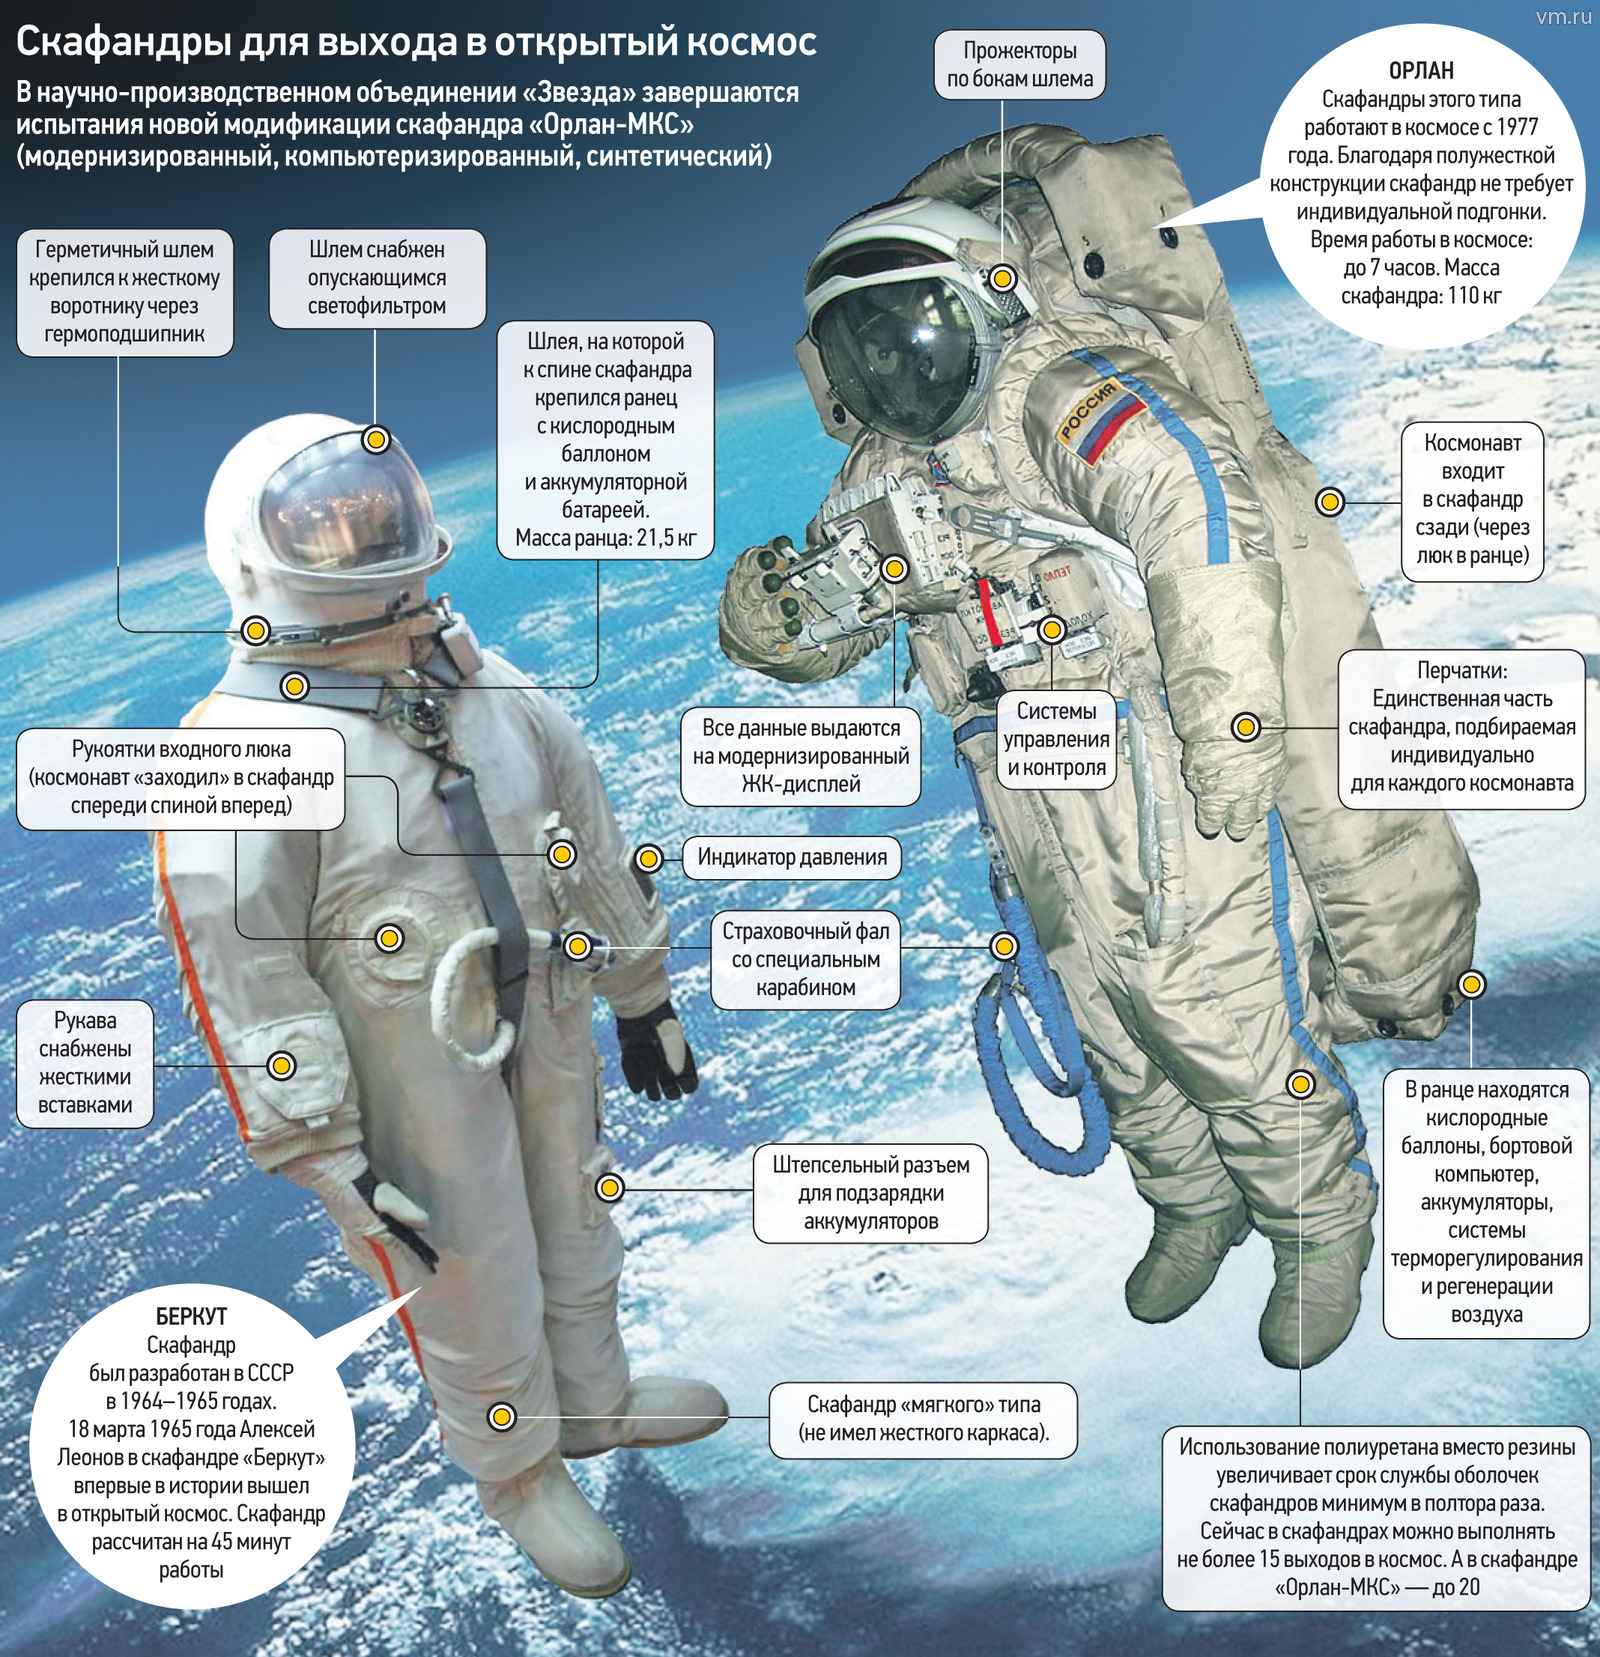 Зачем скафандр. Орлан костюм Космонавта. Из чего состоит скафандр Космонавта.